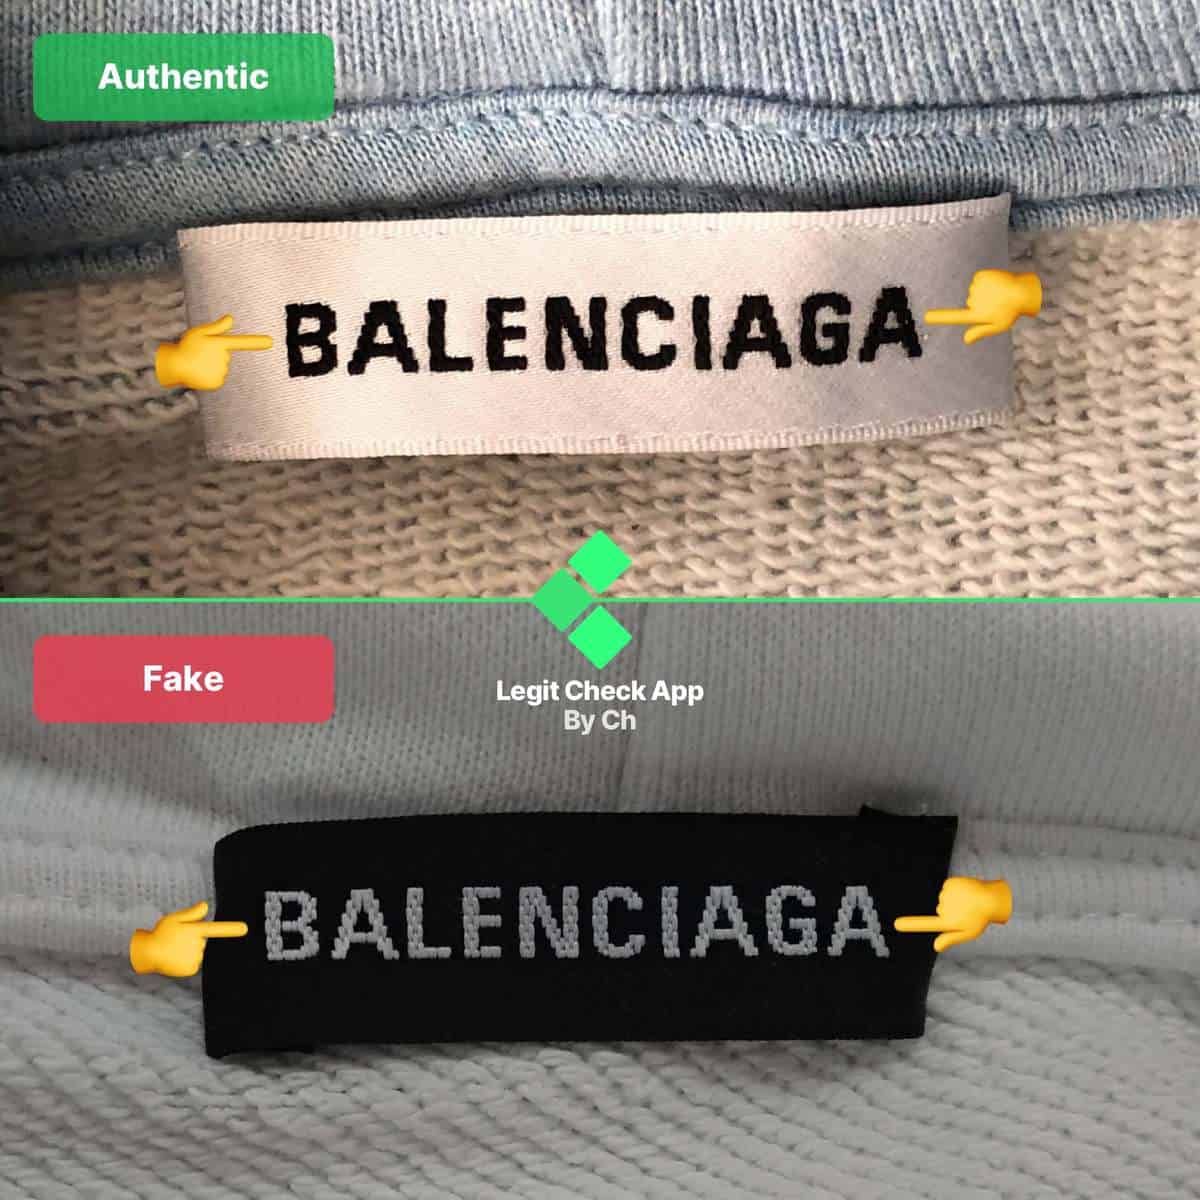 Balenciaga Classic City Bag Review + Spot a Fake Balenciaga